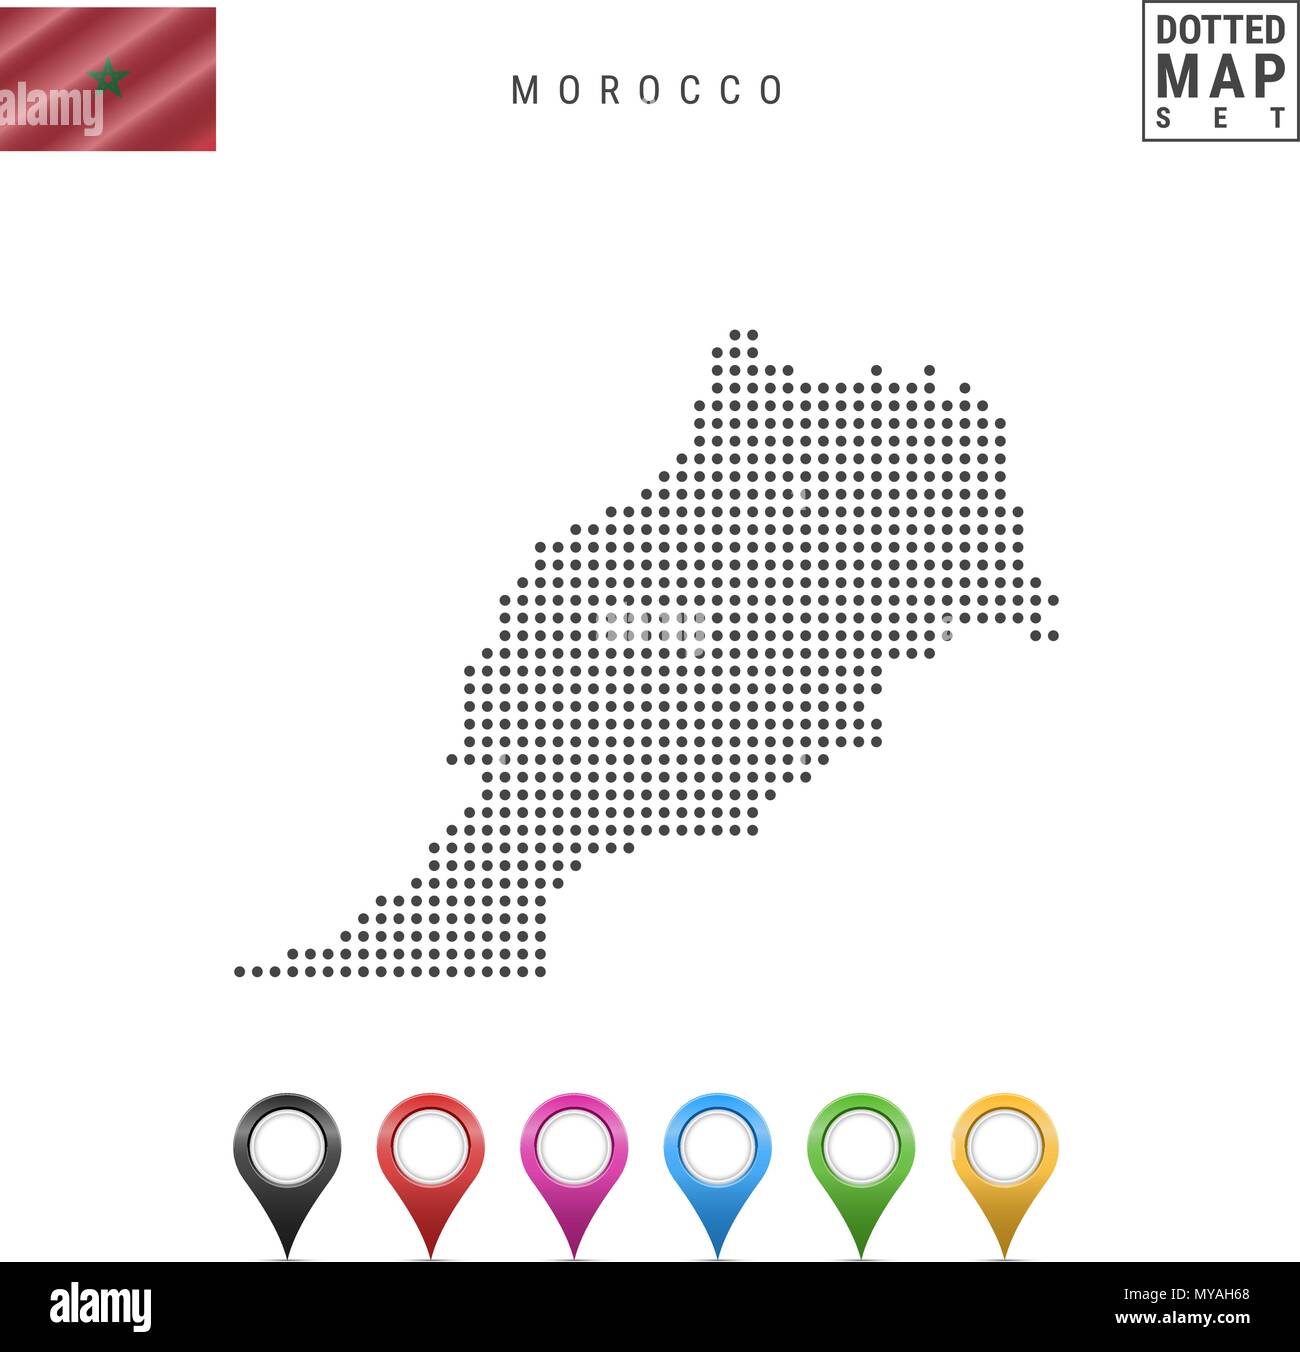 Vettore Mappa tratteggiata del Marocco. Semplice Silhouette del Marocco. Bandiera nazionale del Marocco. Insieme multicolore i marcatori mappa Illustrazione Vettoriale